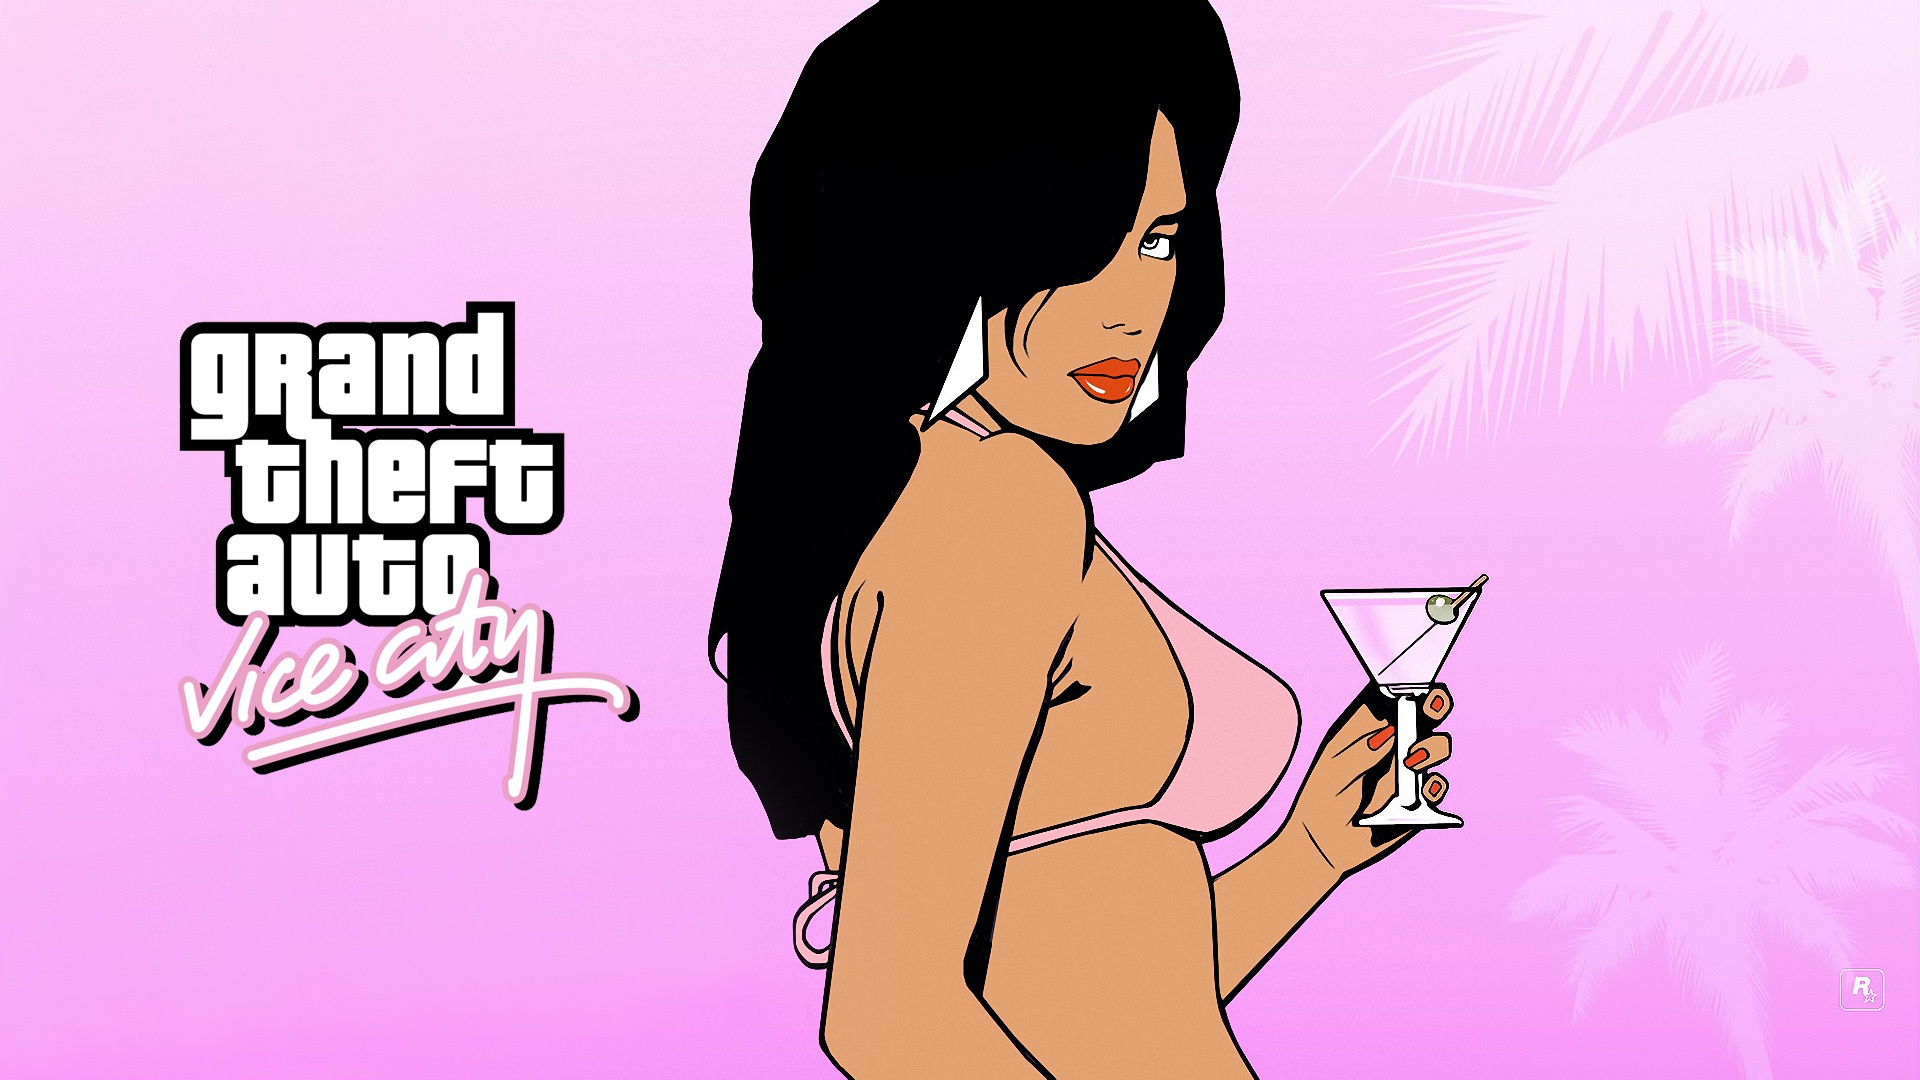 Laden Sie Grand Theft Auto: Vice City HD-Desktop-Hintergründe herunter